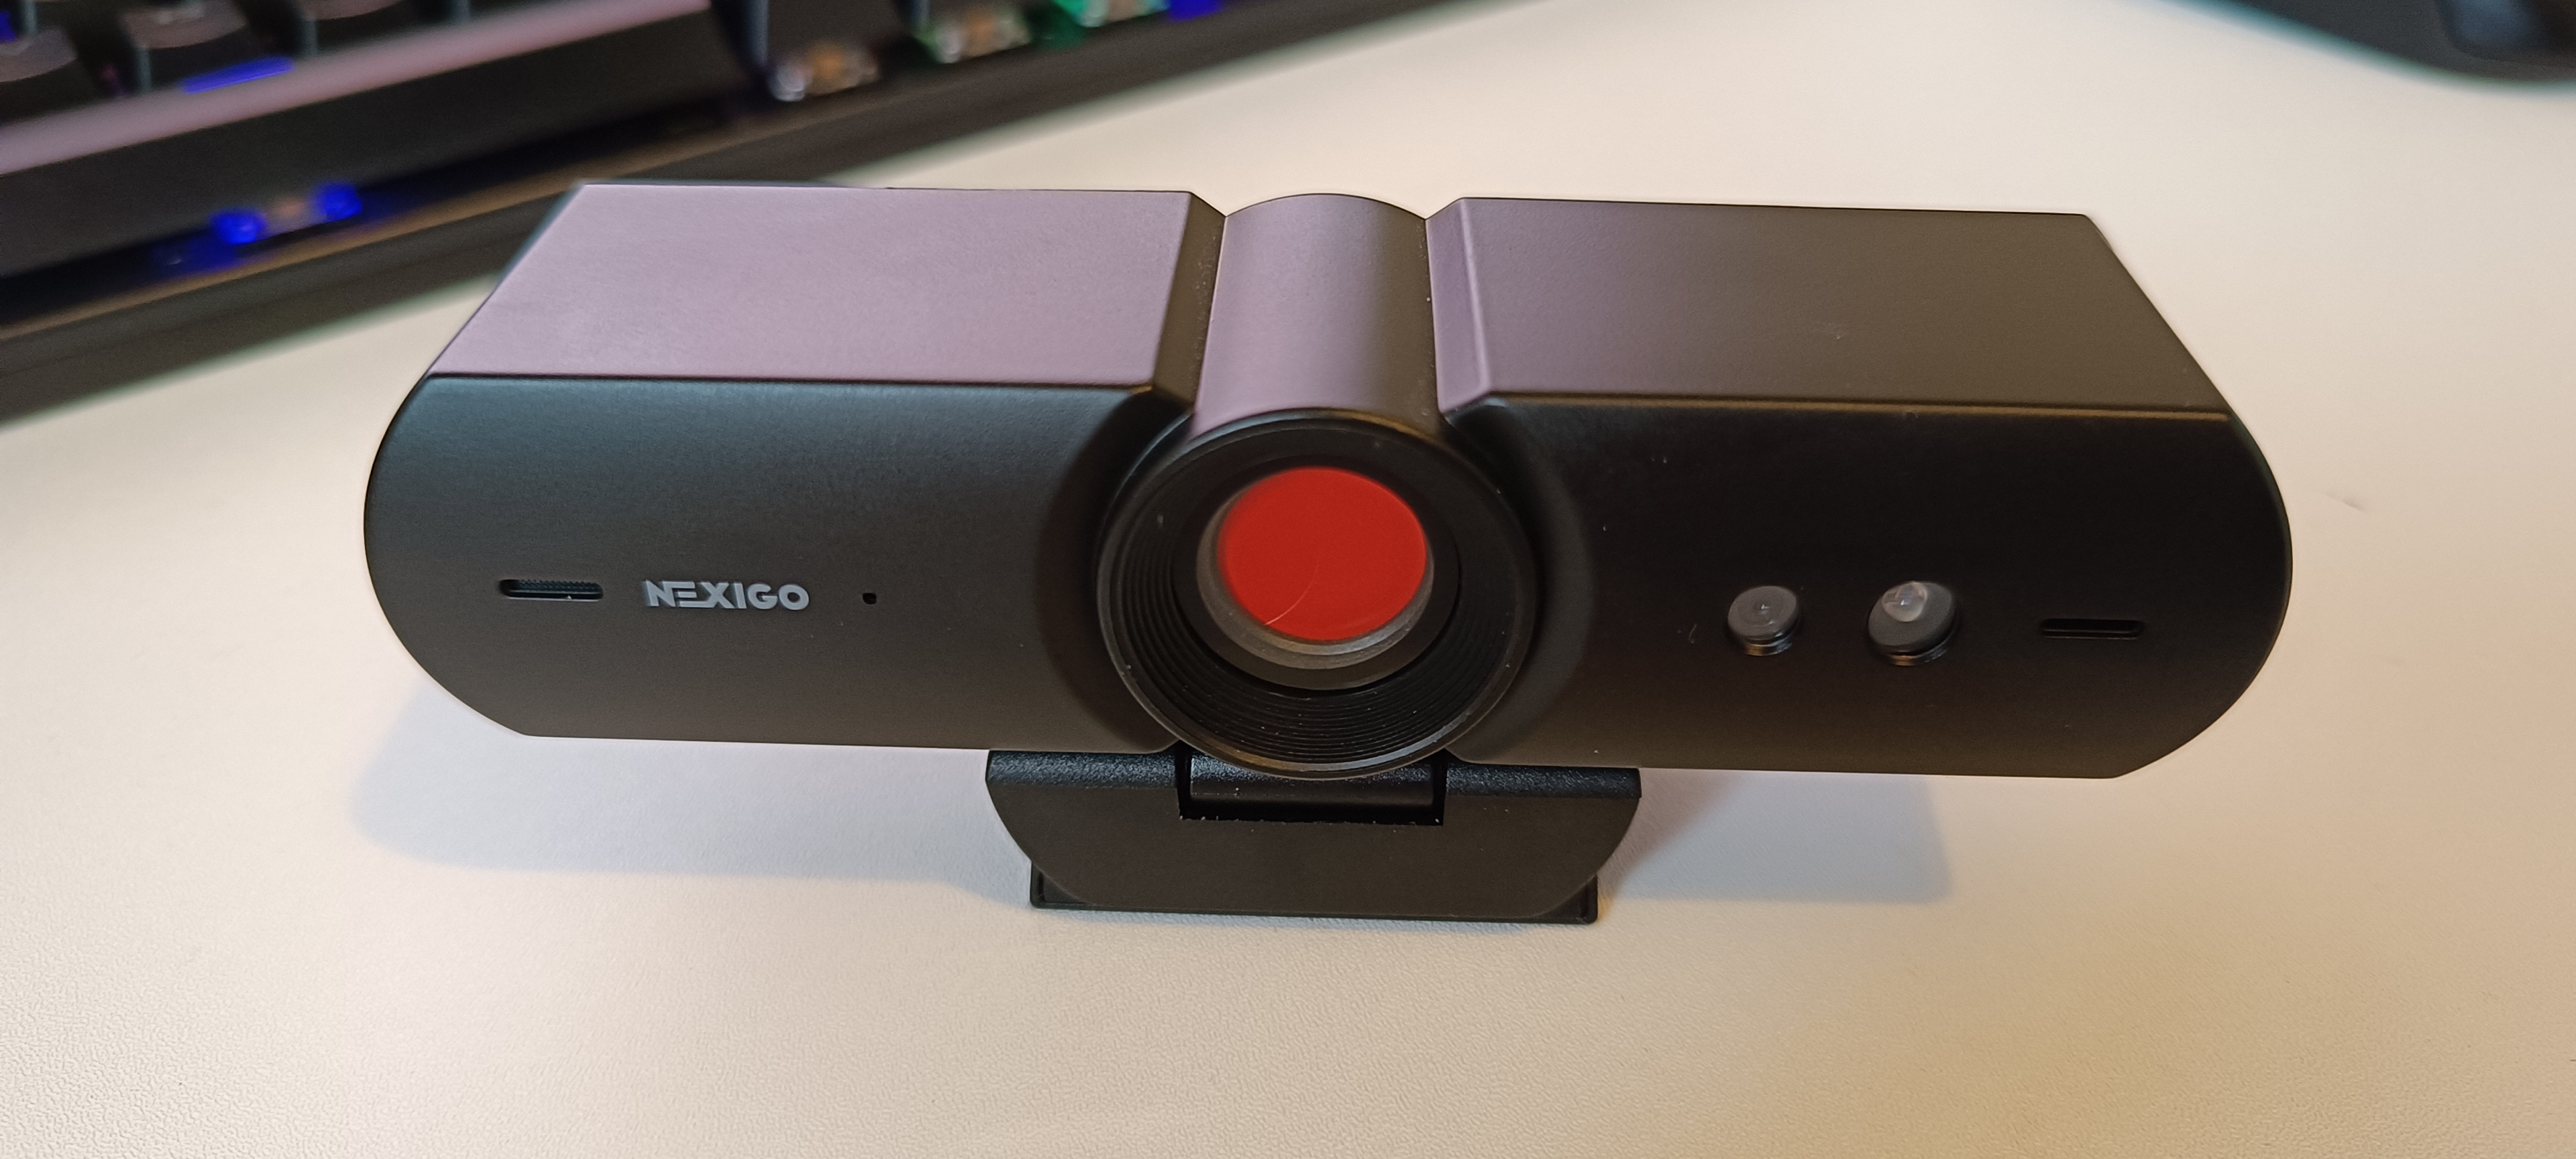 PS5 Budget Streaming Webcam for Beginners? - Nexigo 1080P Streaming Webcam  Review! 